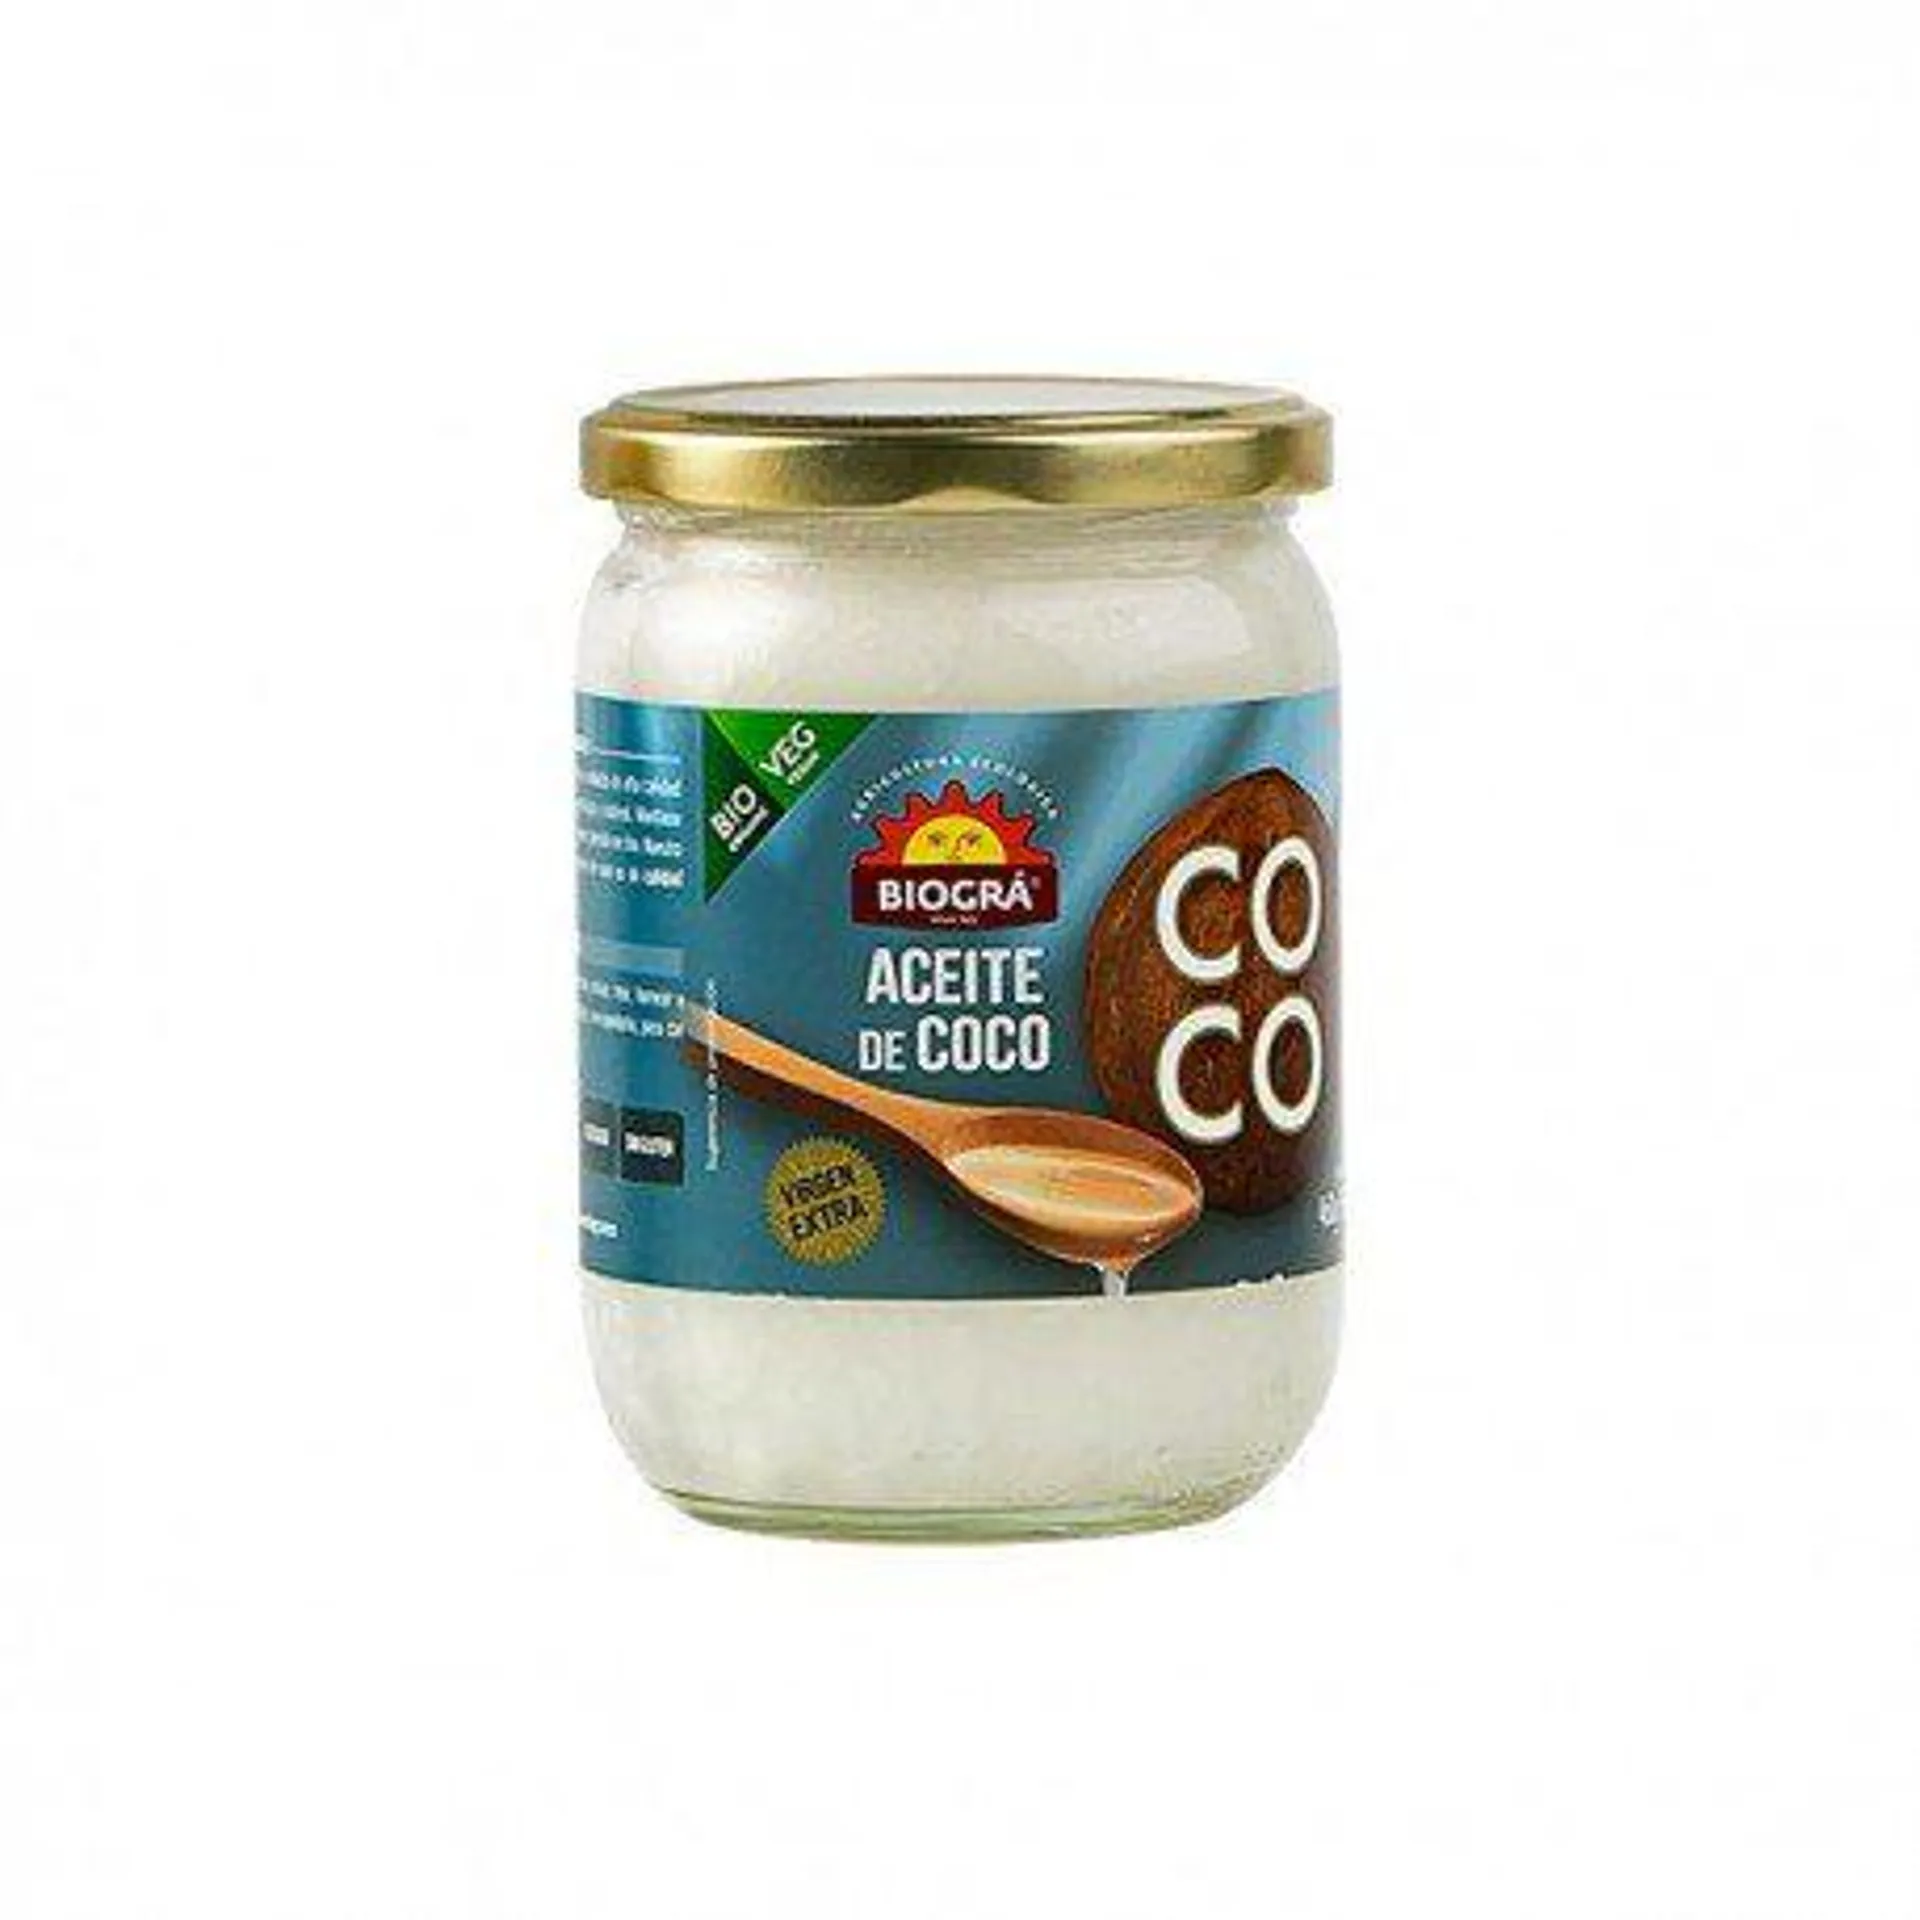 Aceite de coco Virgen Extra (460 gr) – Biográ